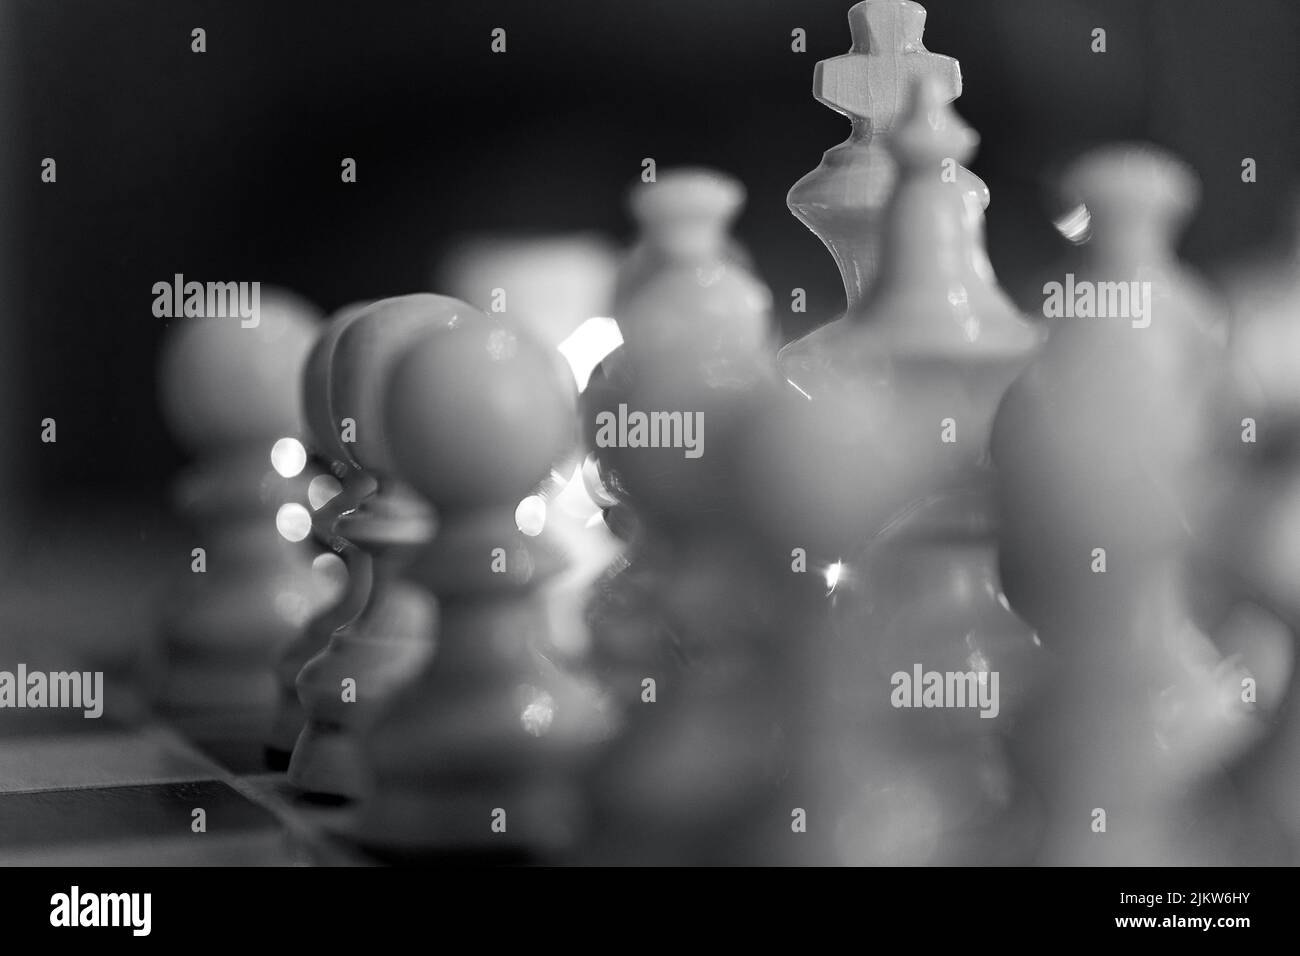 Un primo piano in scala di grigi dei pezzi di scacchi bianchi. Messa a fuoco selezionata. Foto Stock